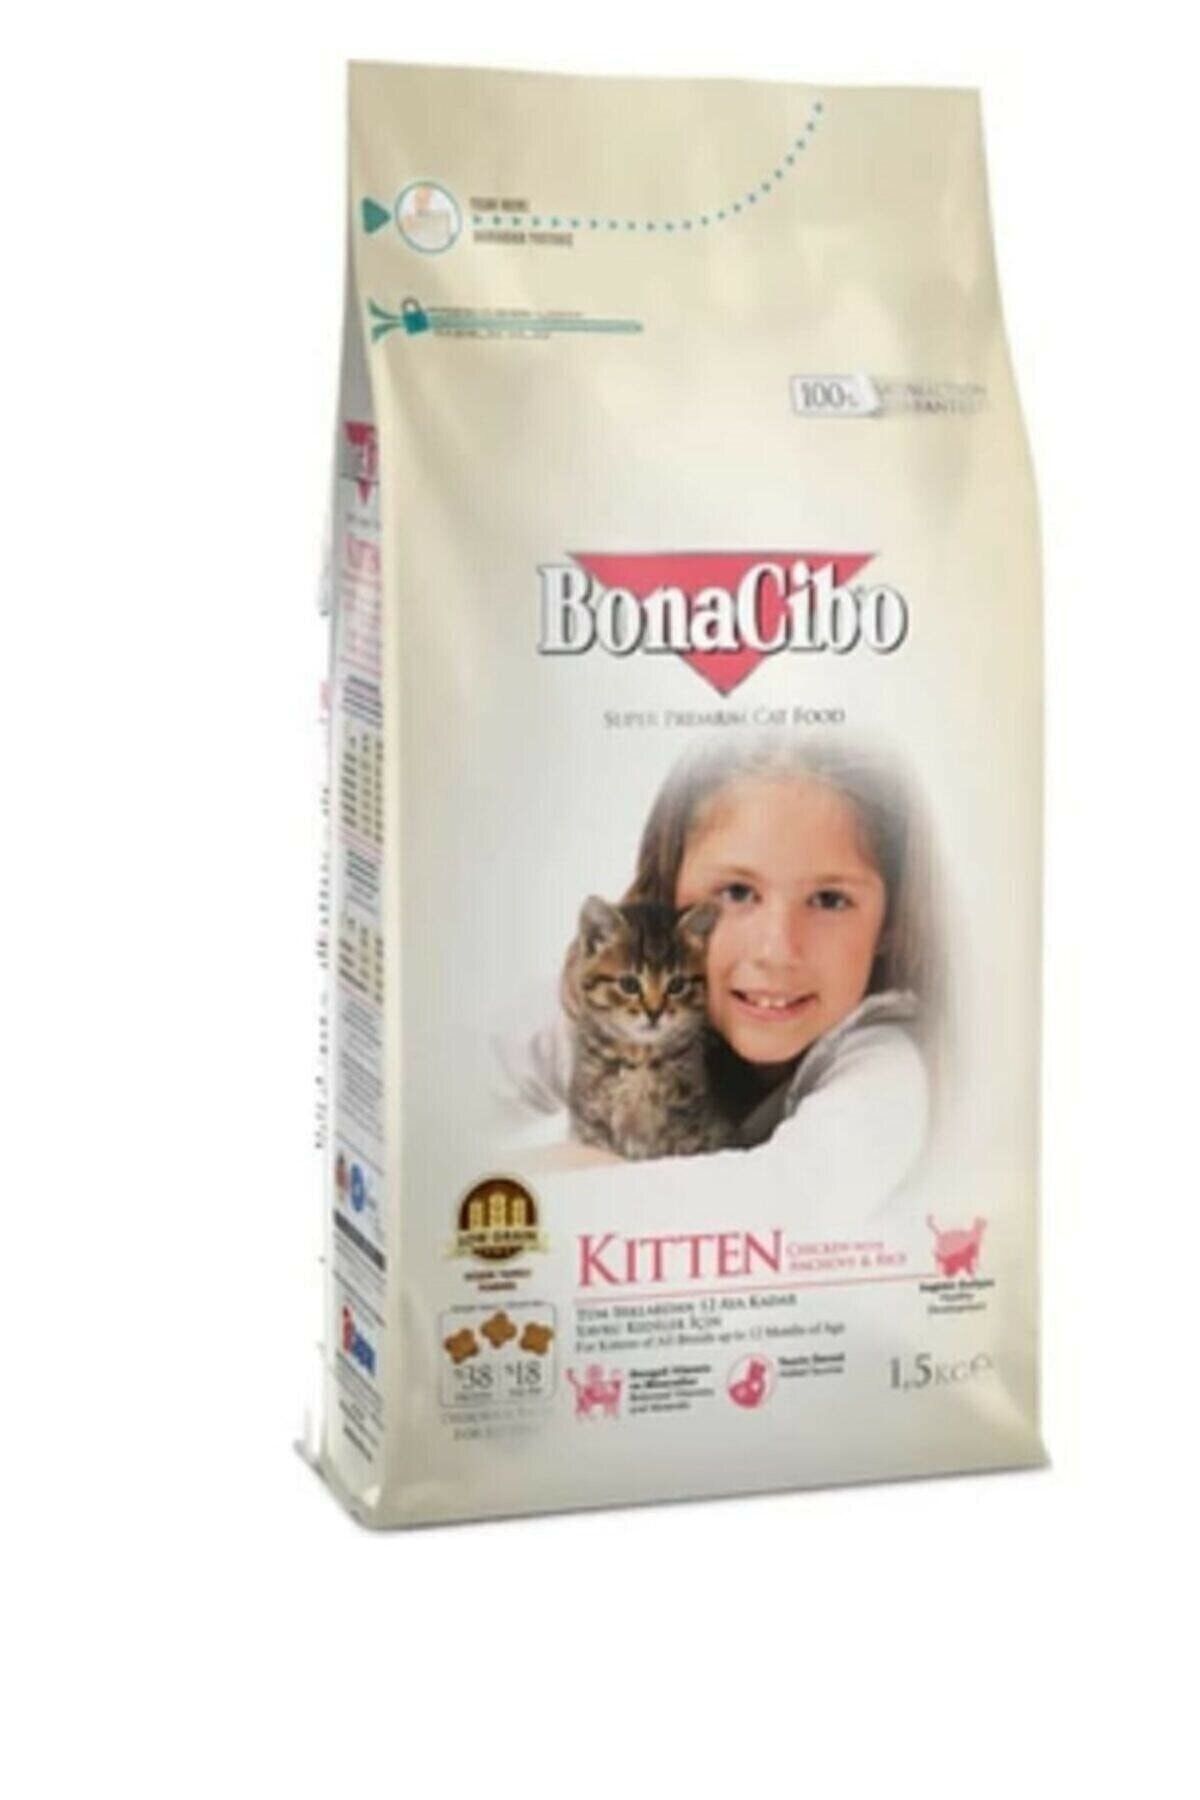 BonaCibo Neo Pet Market Kitten Tavuklu (hamsi Ve Pirinç Eşliğinde) Yavru Kedi Maması 1,5 Kg.